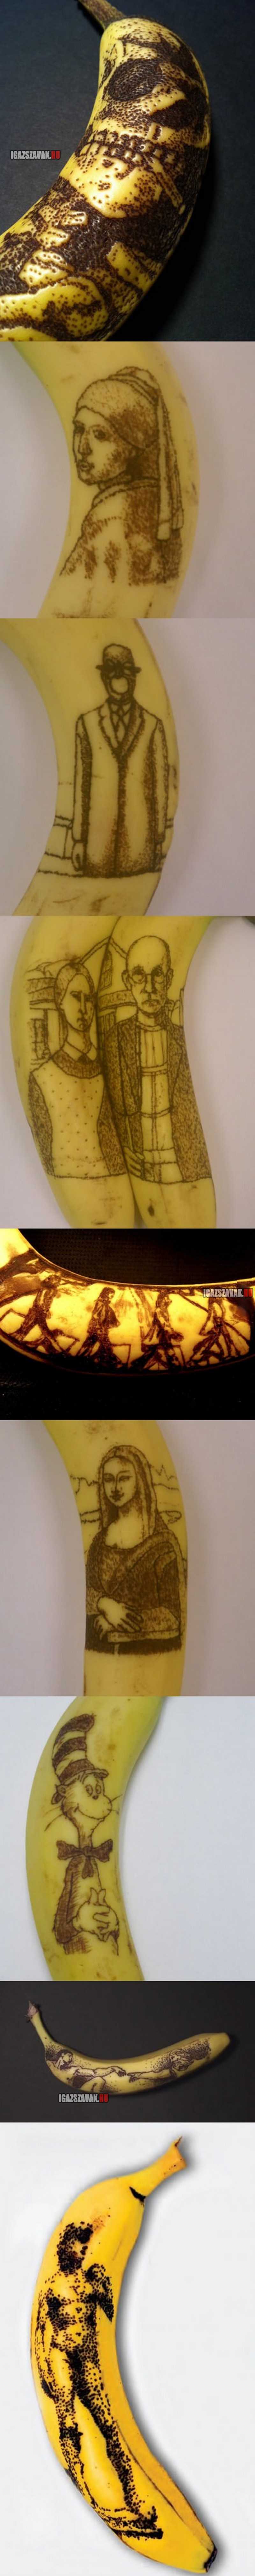 művészeti banán oxidáció, egy tű segítségével